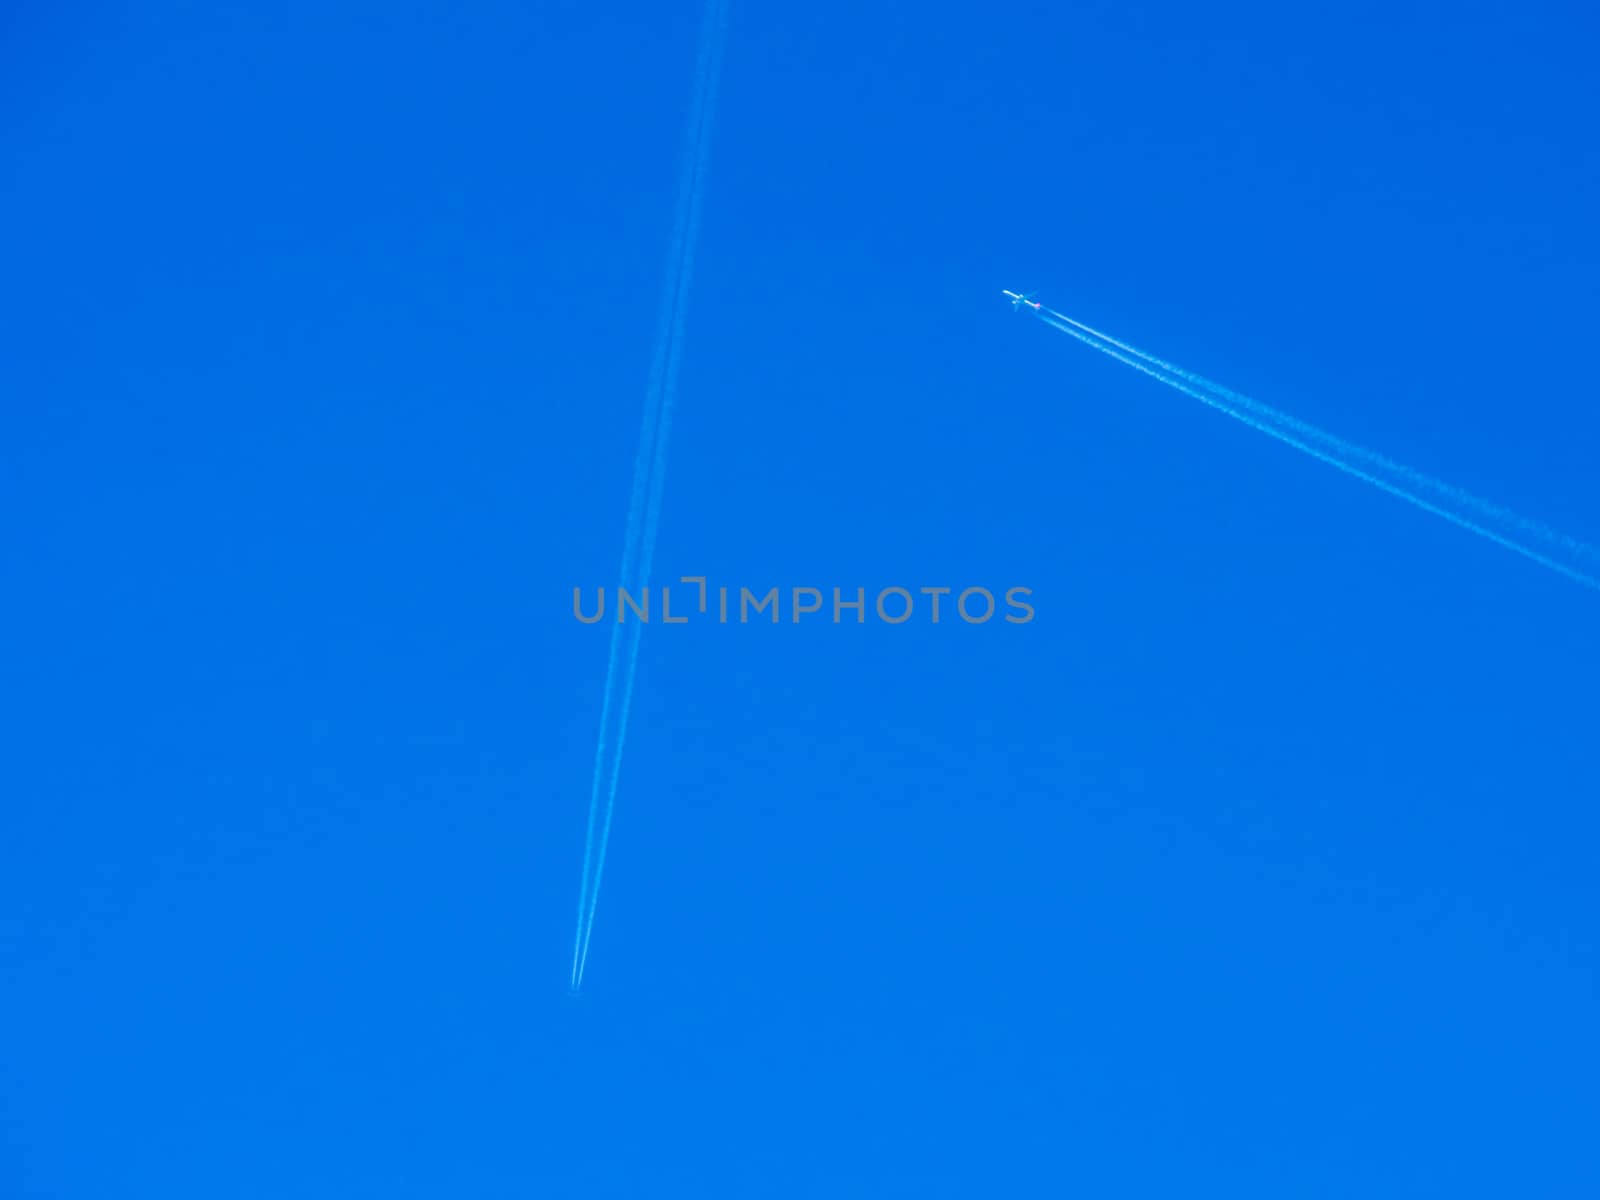 Crossing Paths Planes in Blue Sky by danieldep